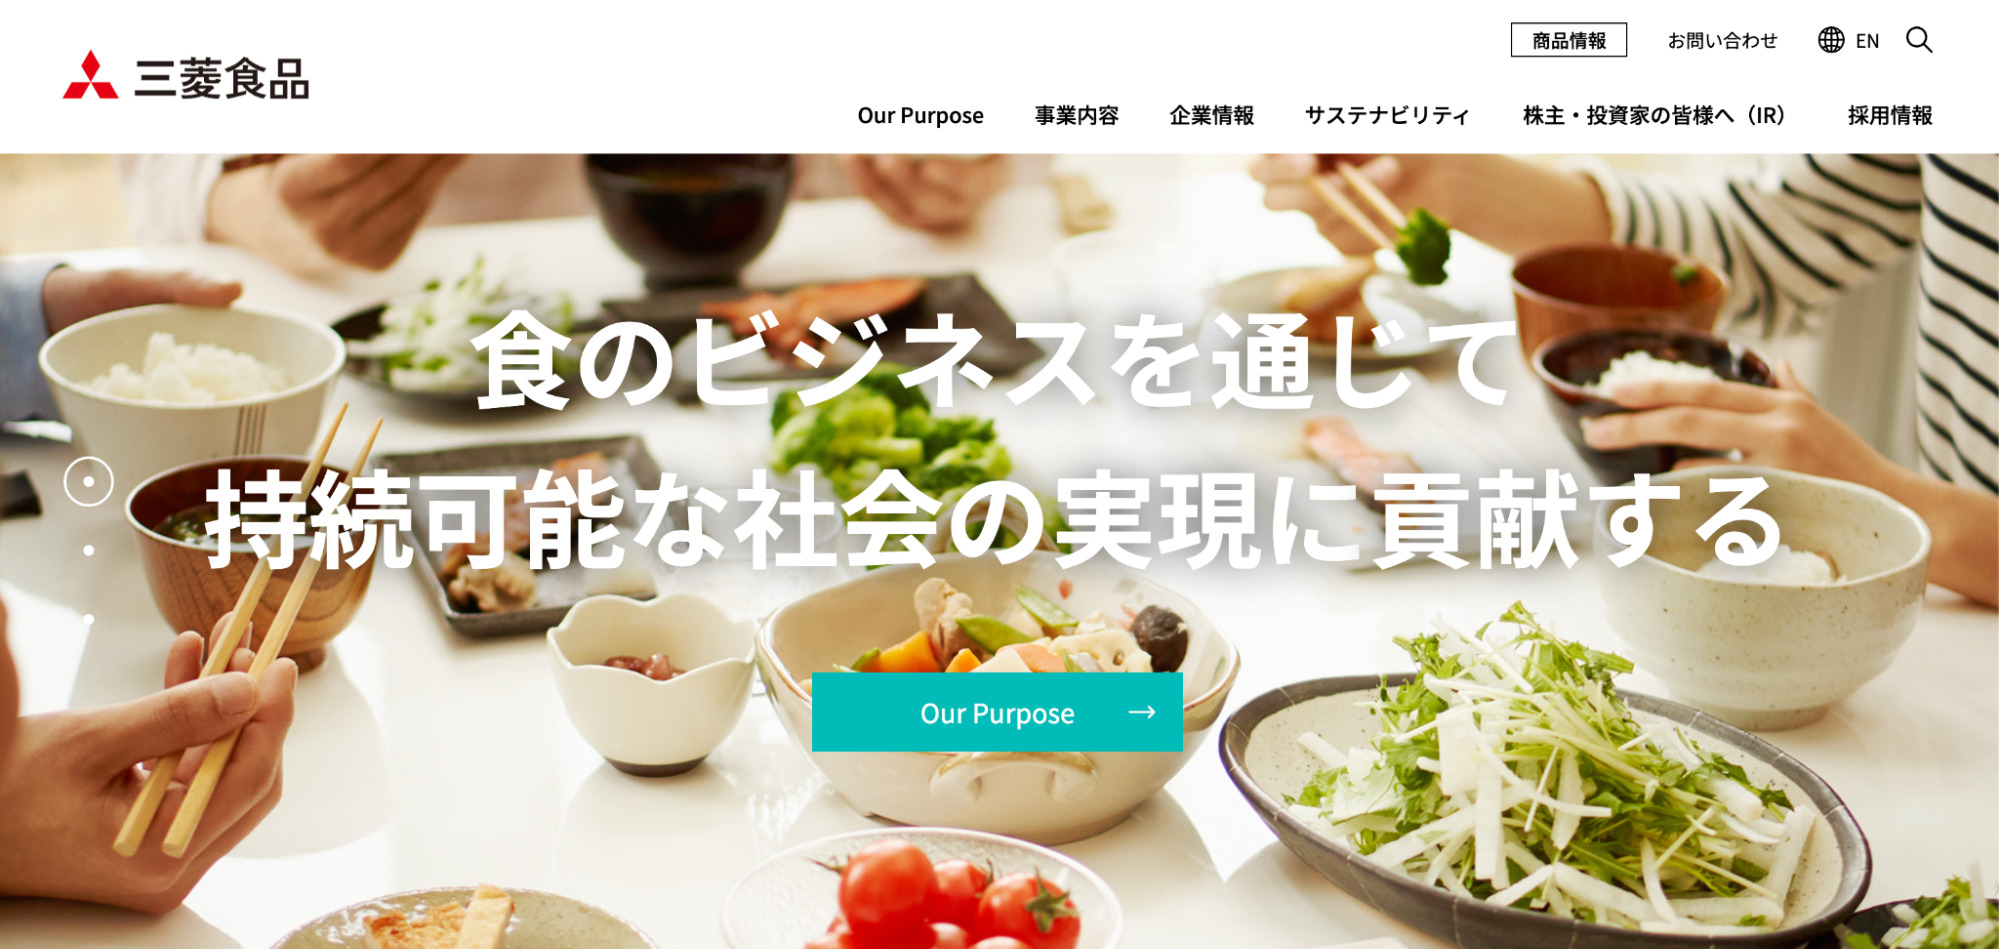 三菱食品の企業ホームページ画像